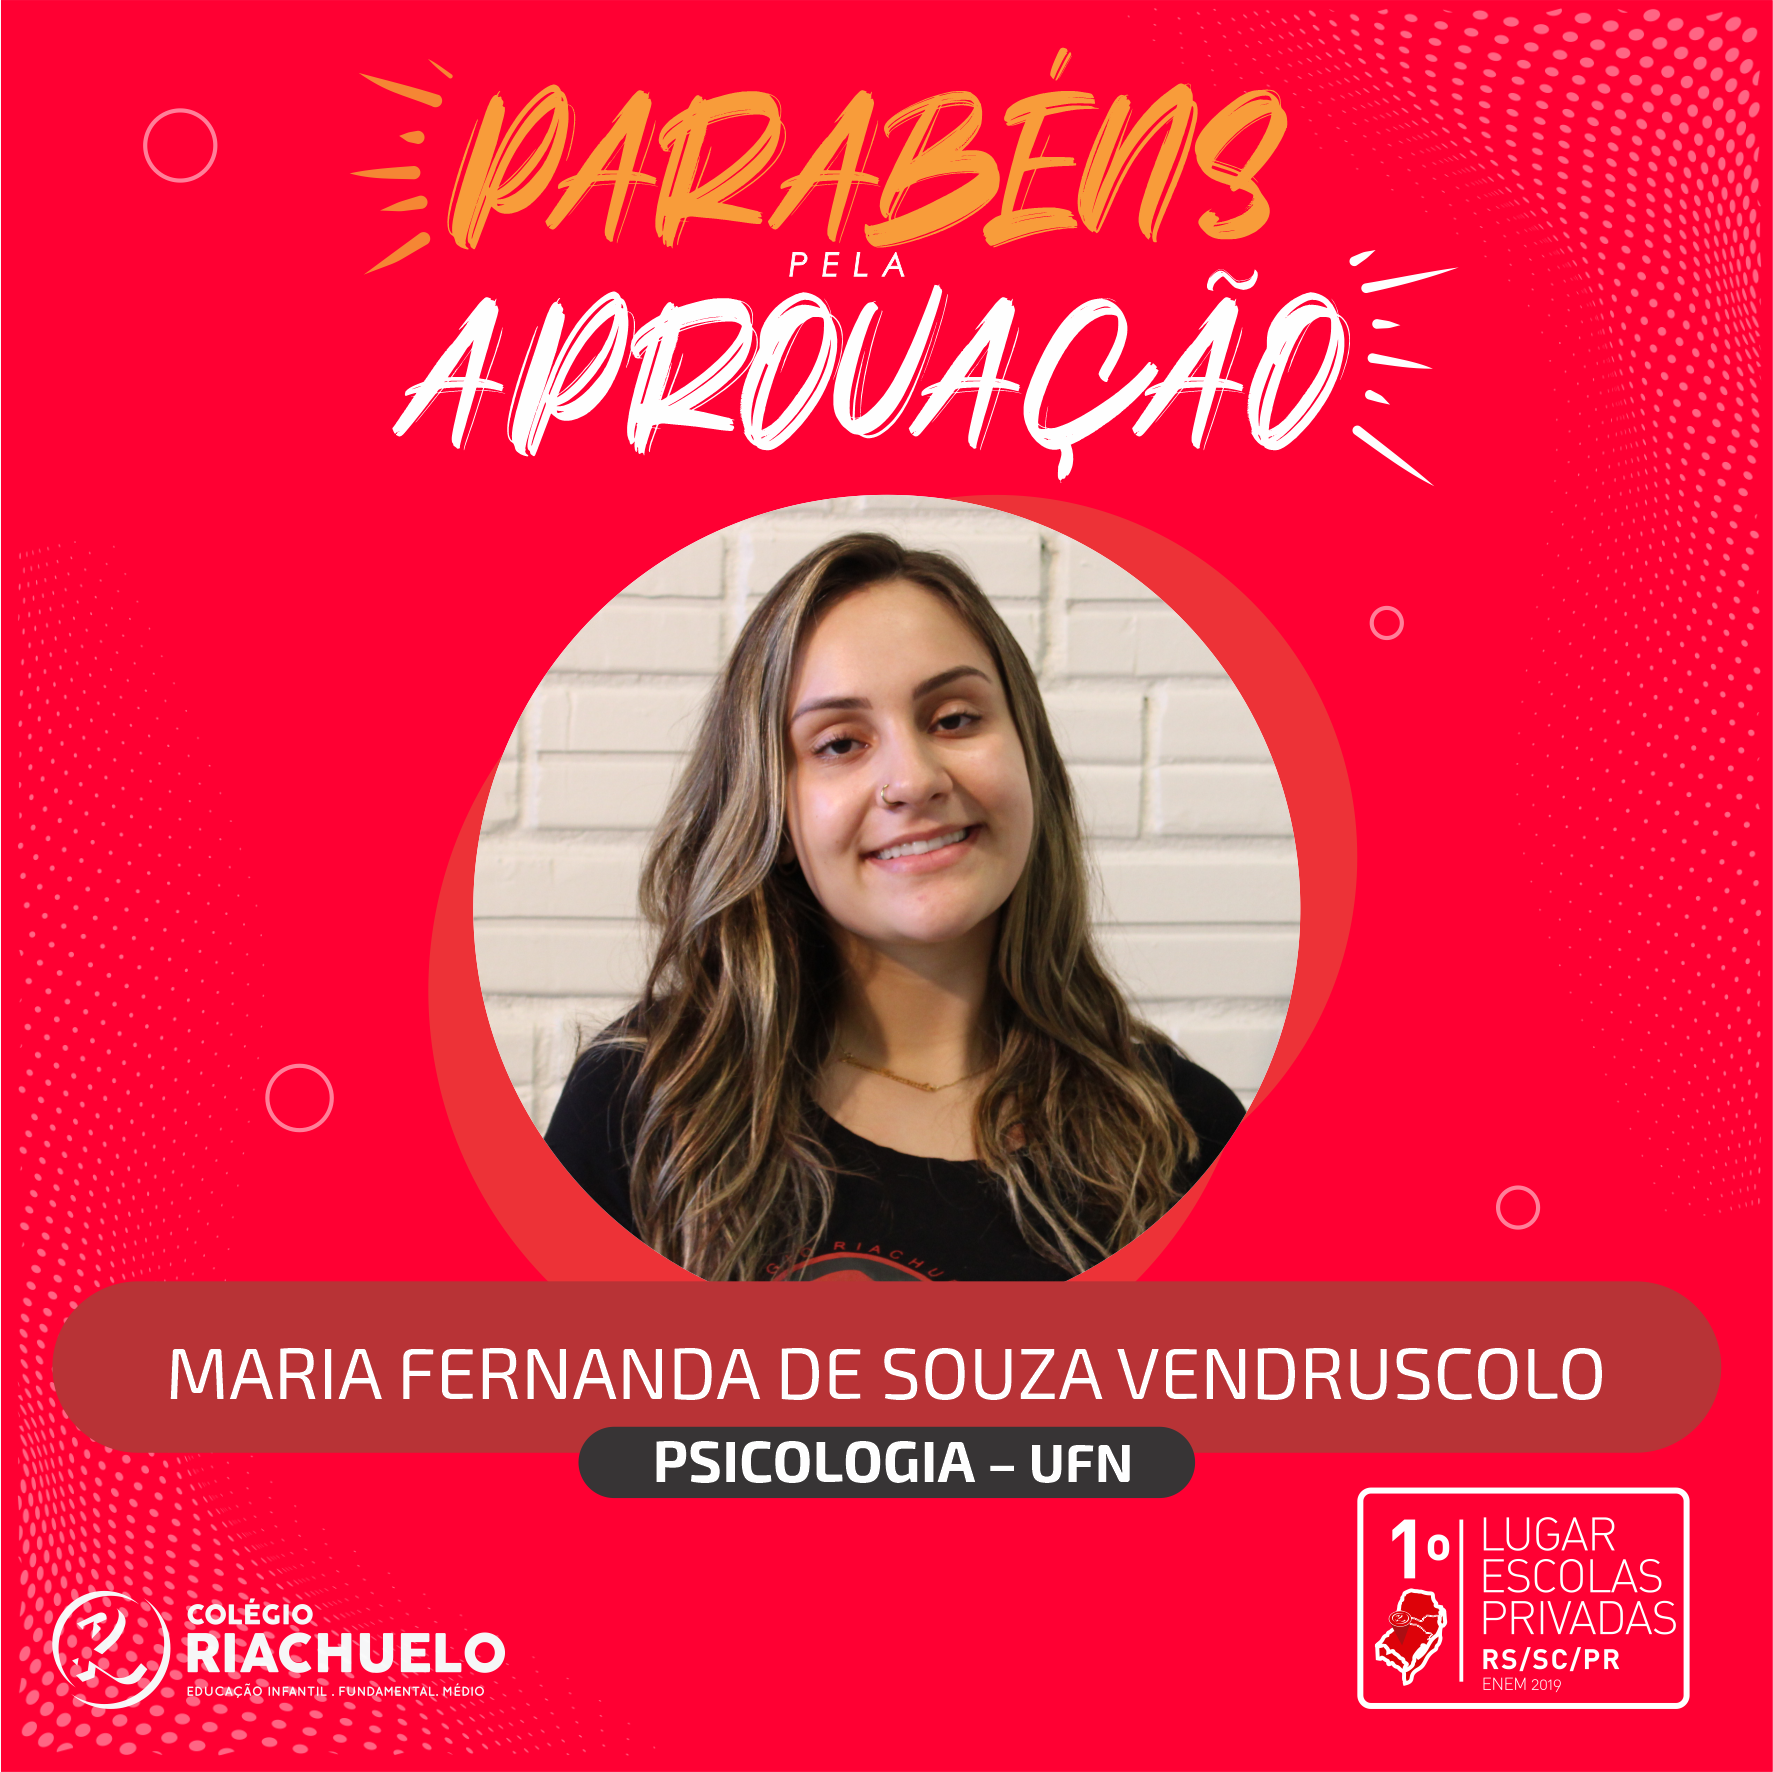 Maria Fernanda de Souza Vendruscolo